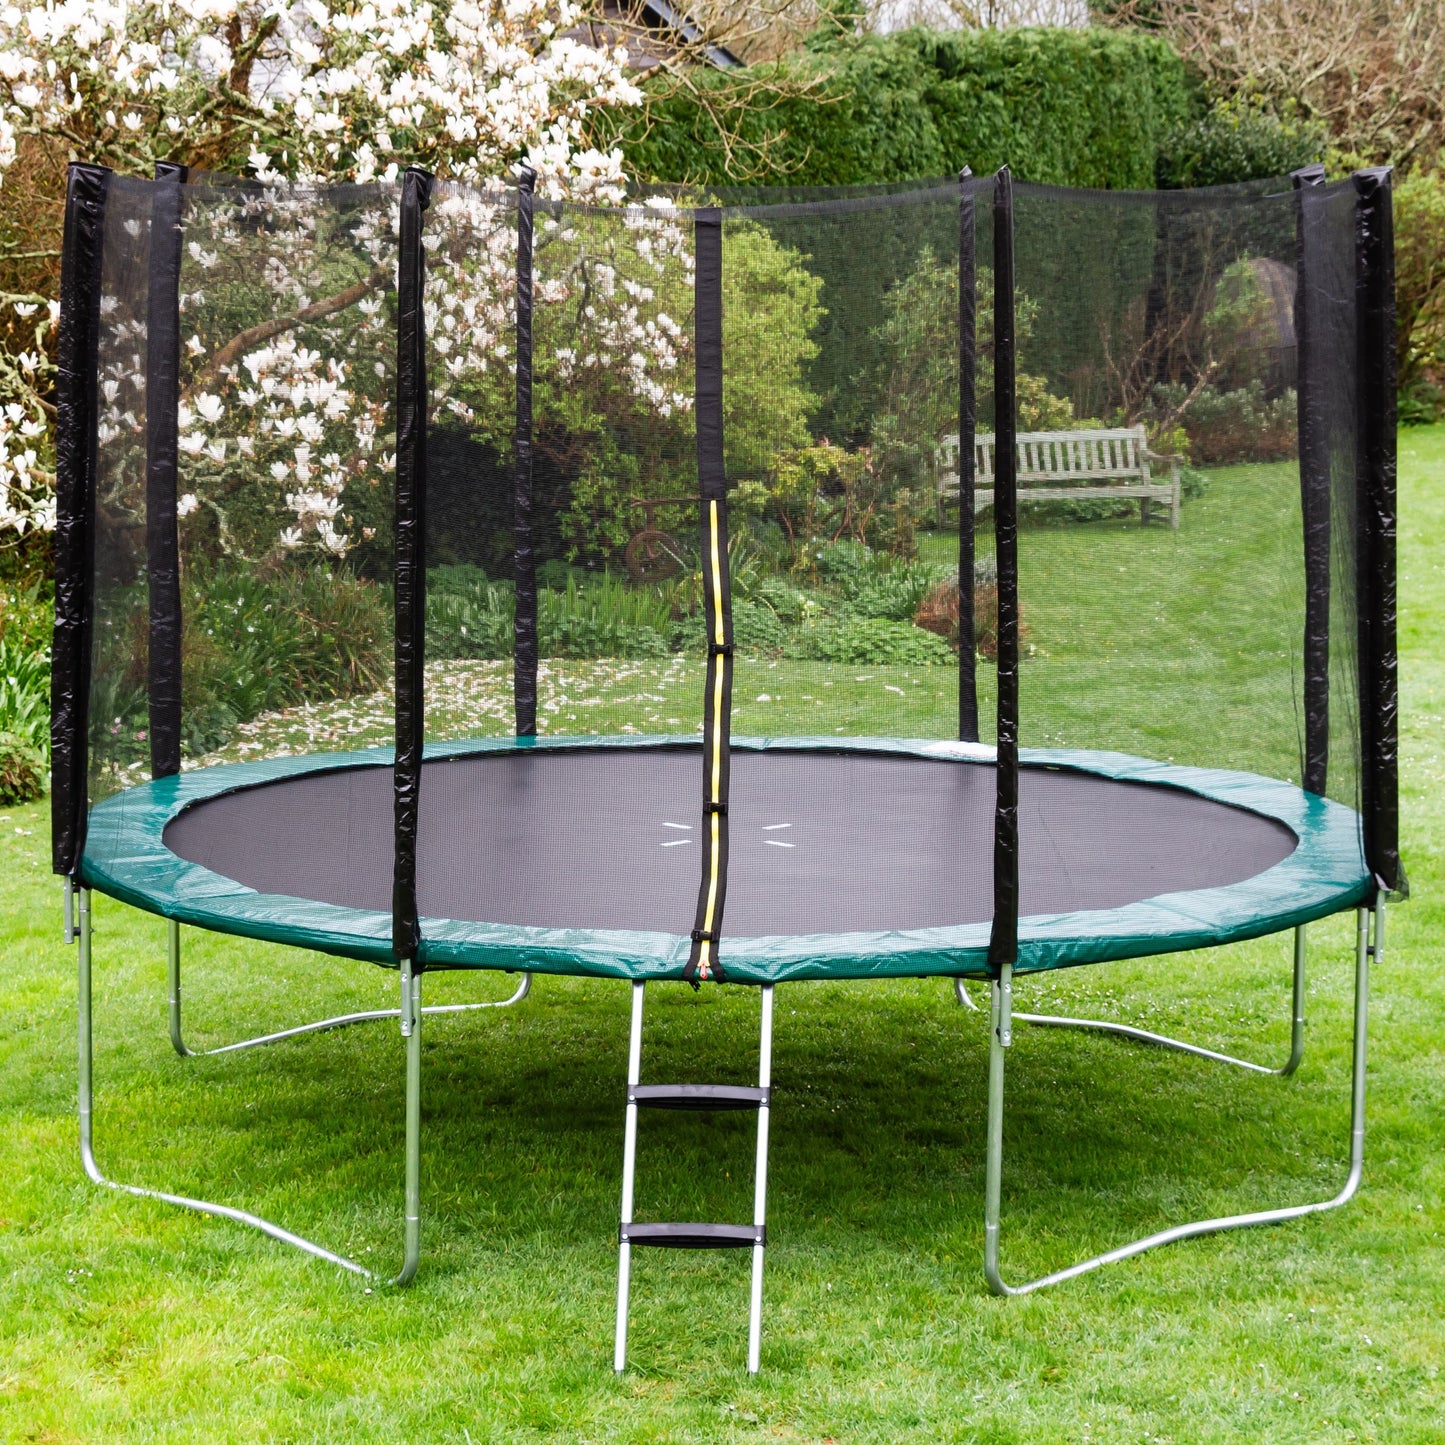 Kanga Hi-Power Green 14ft trampoline package